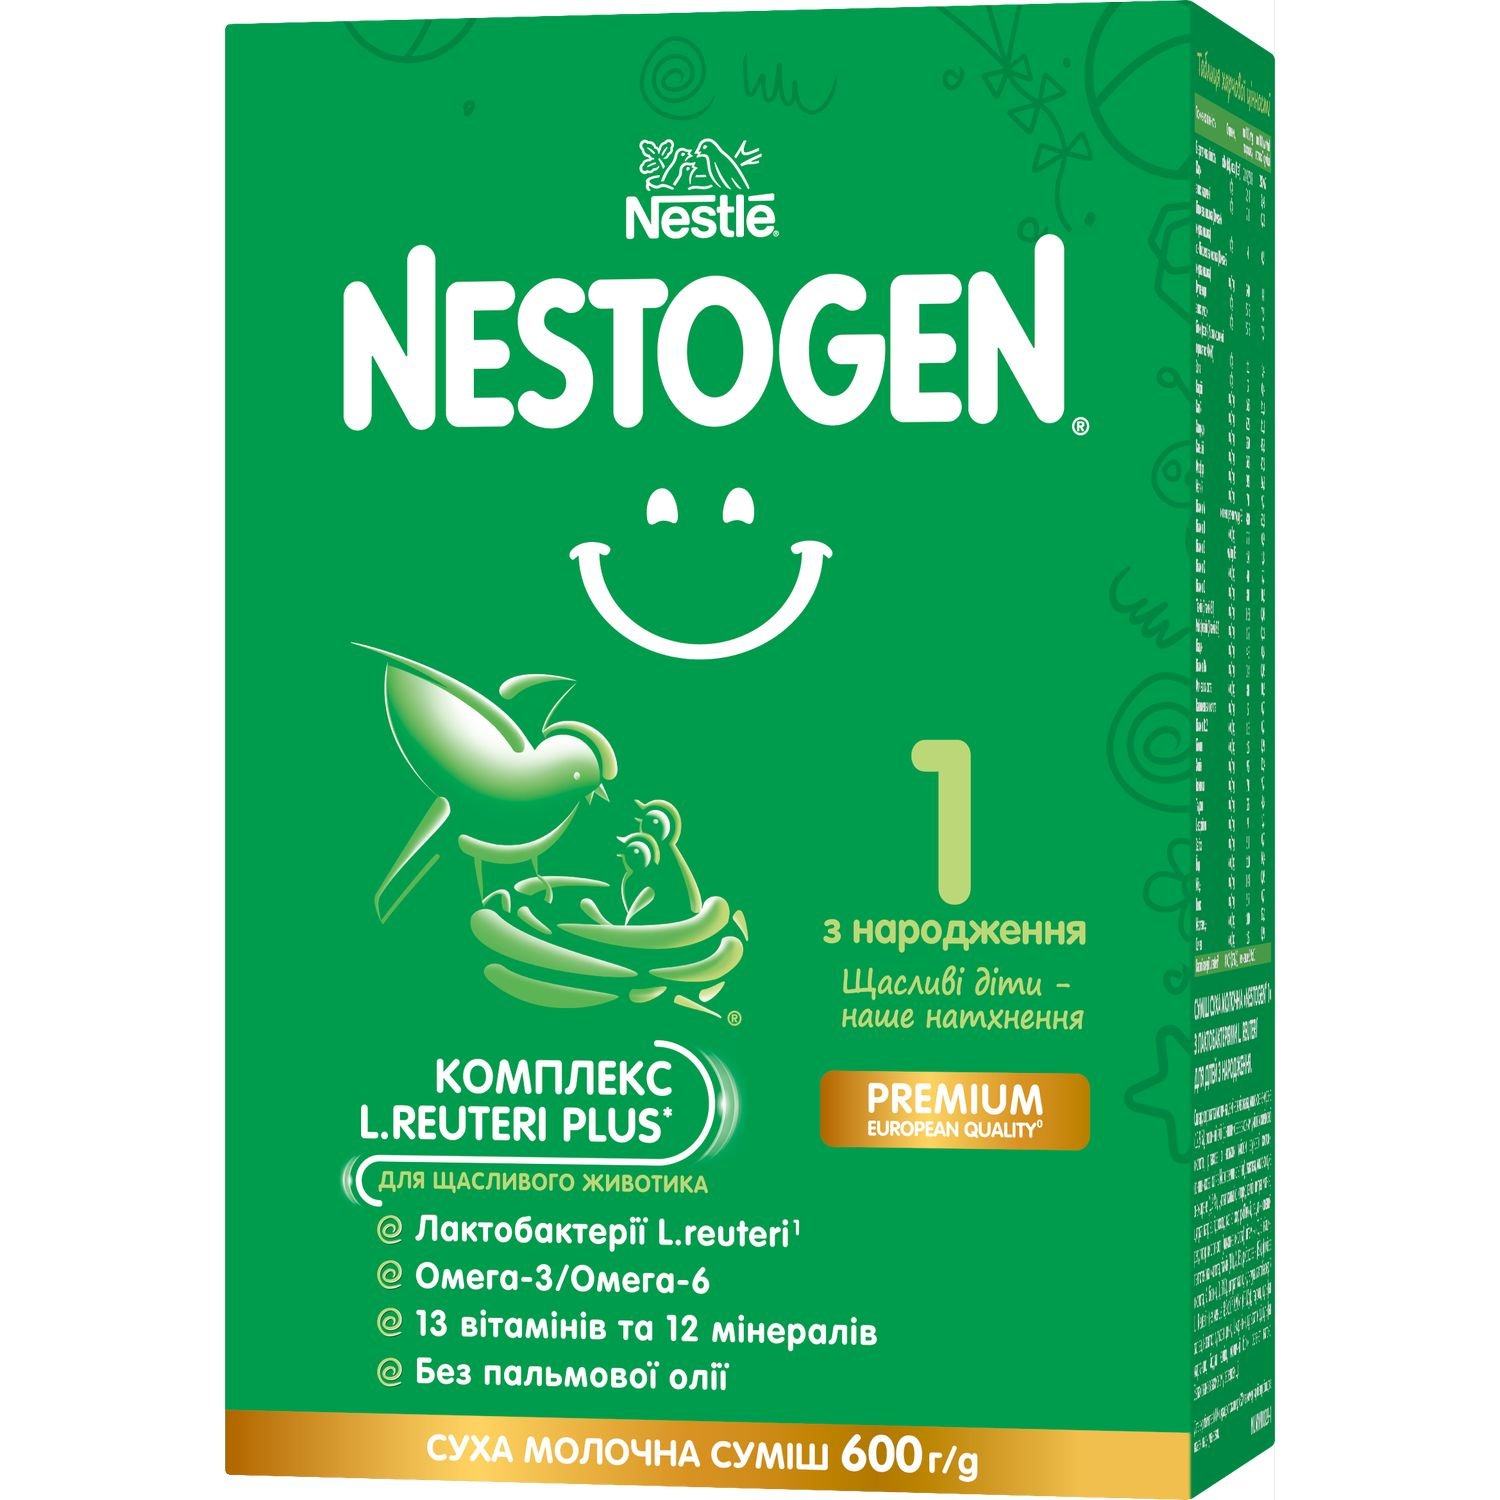 Сухая молочная смесь Nestogen 1 с лактобактериями L. Reuteri, 600 г - фото 1